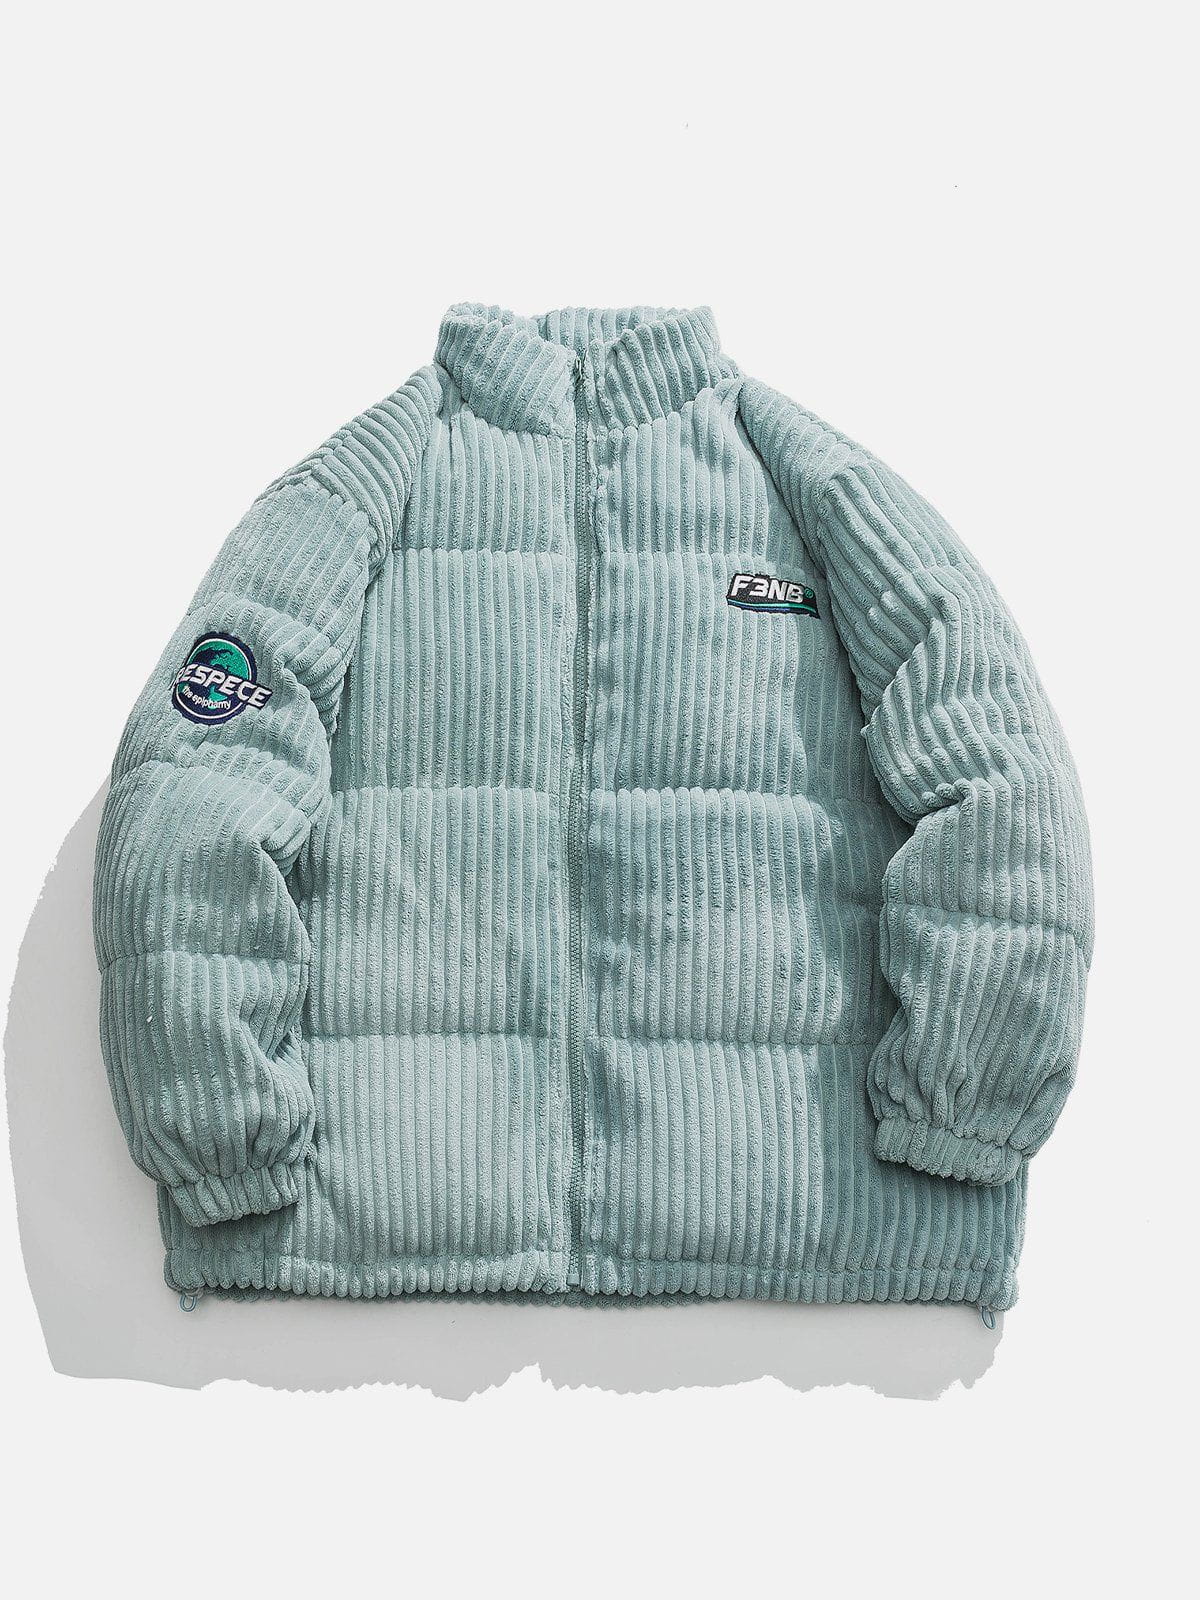 Sneakerland™ - Solid Corduroy Winter Coat